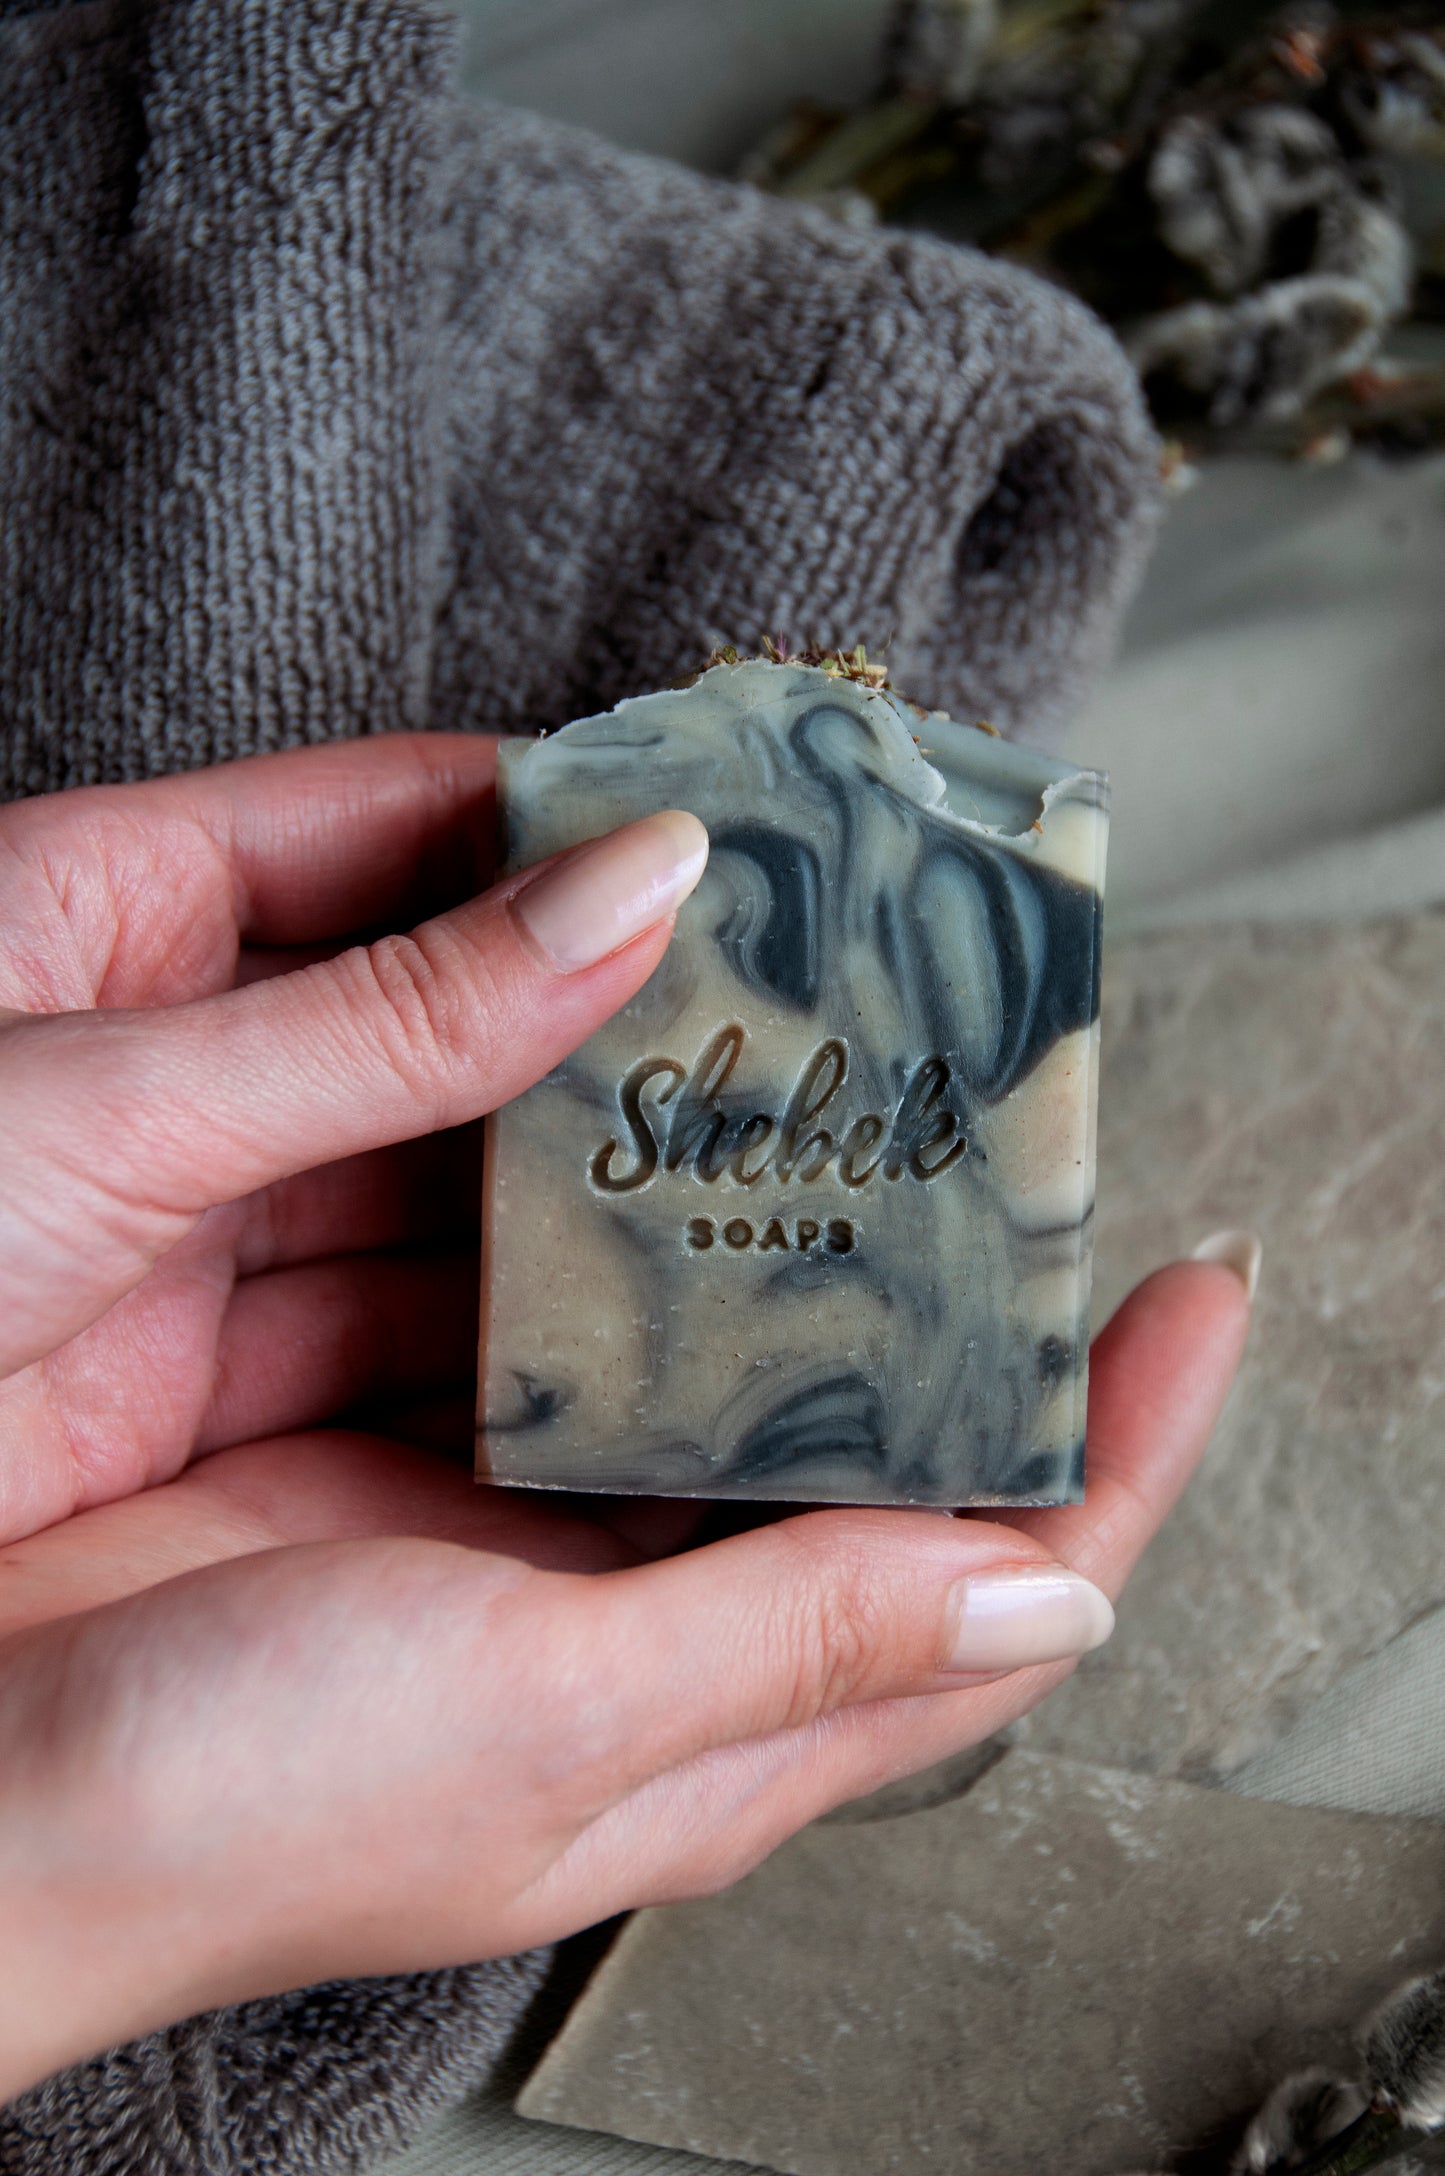 "Siberian pine" soap by Shebek Beauty